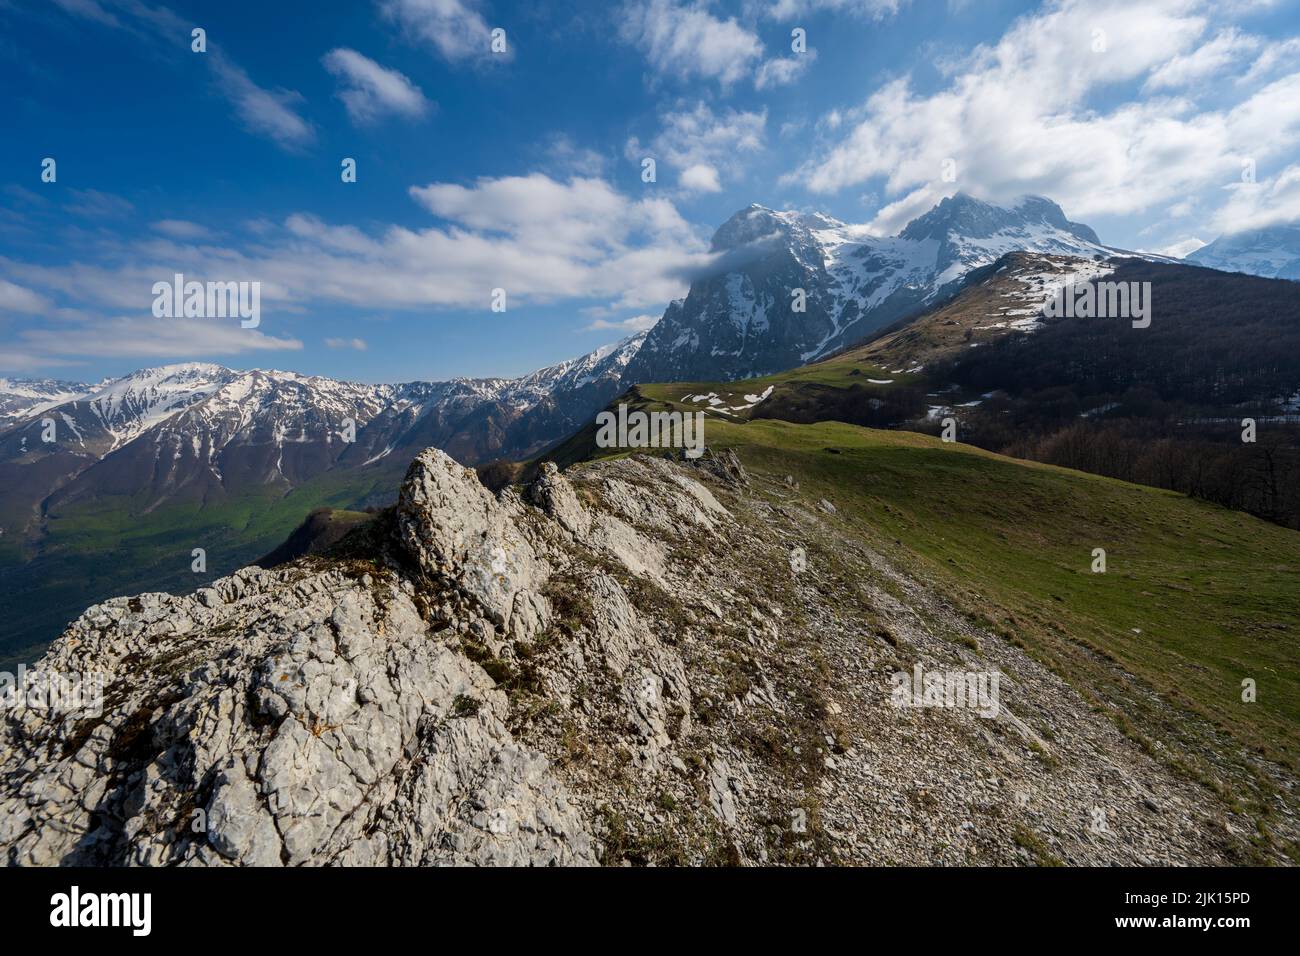 Gran Sasso e Monti della Laga National Park, Abruzzo, Italy, Europe Stock Photo